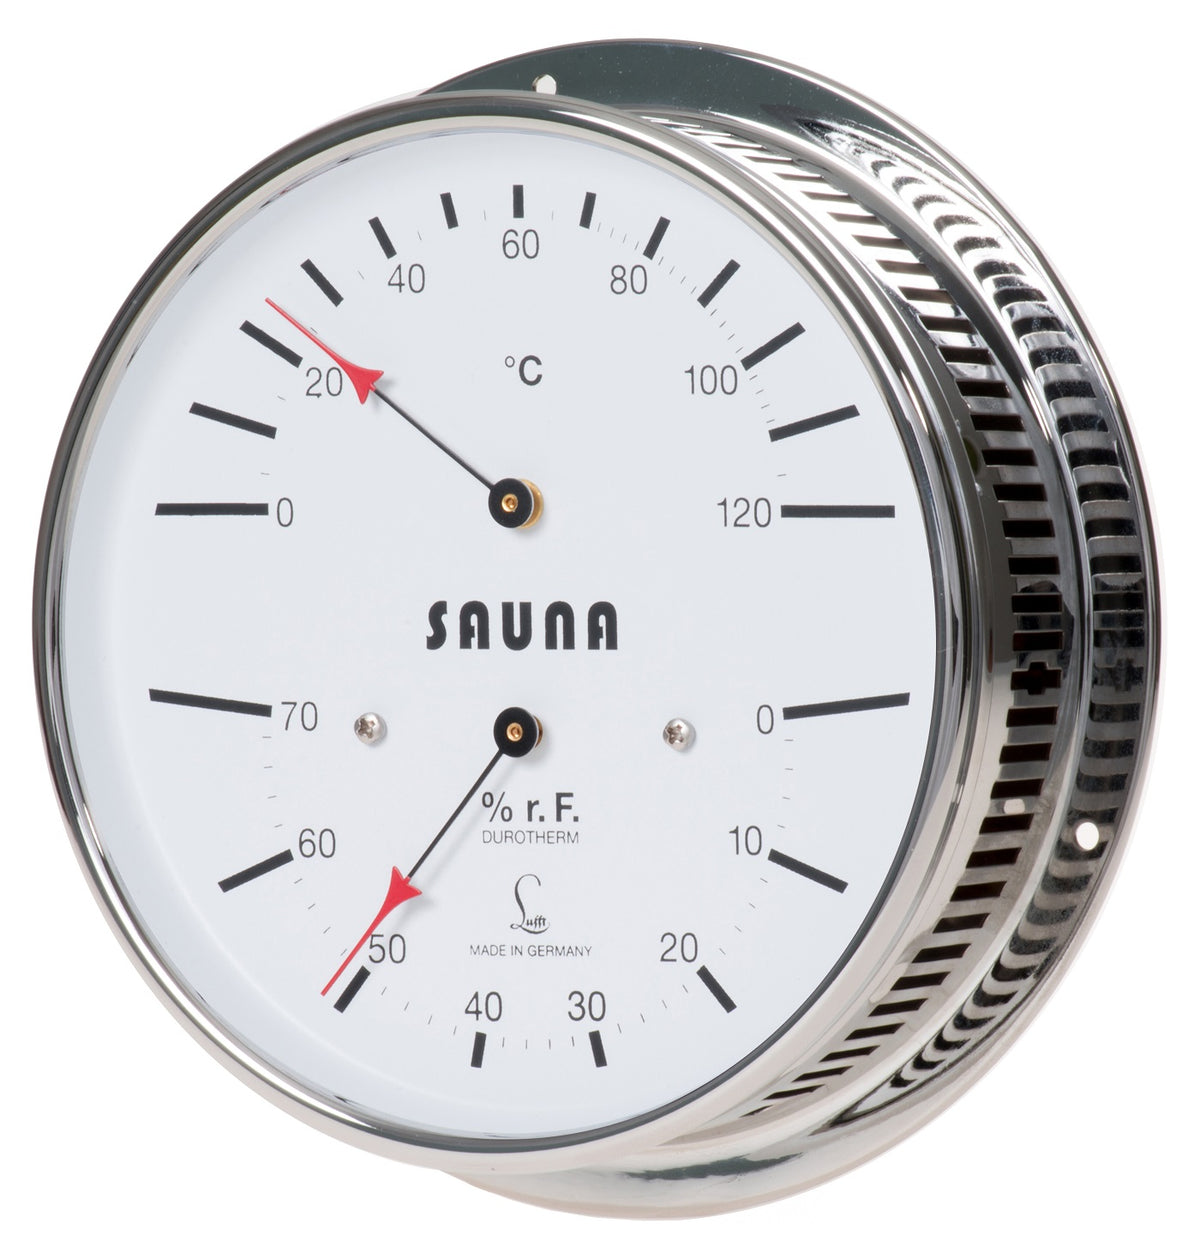 5030.00 LUFFT Sauna climatemeter